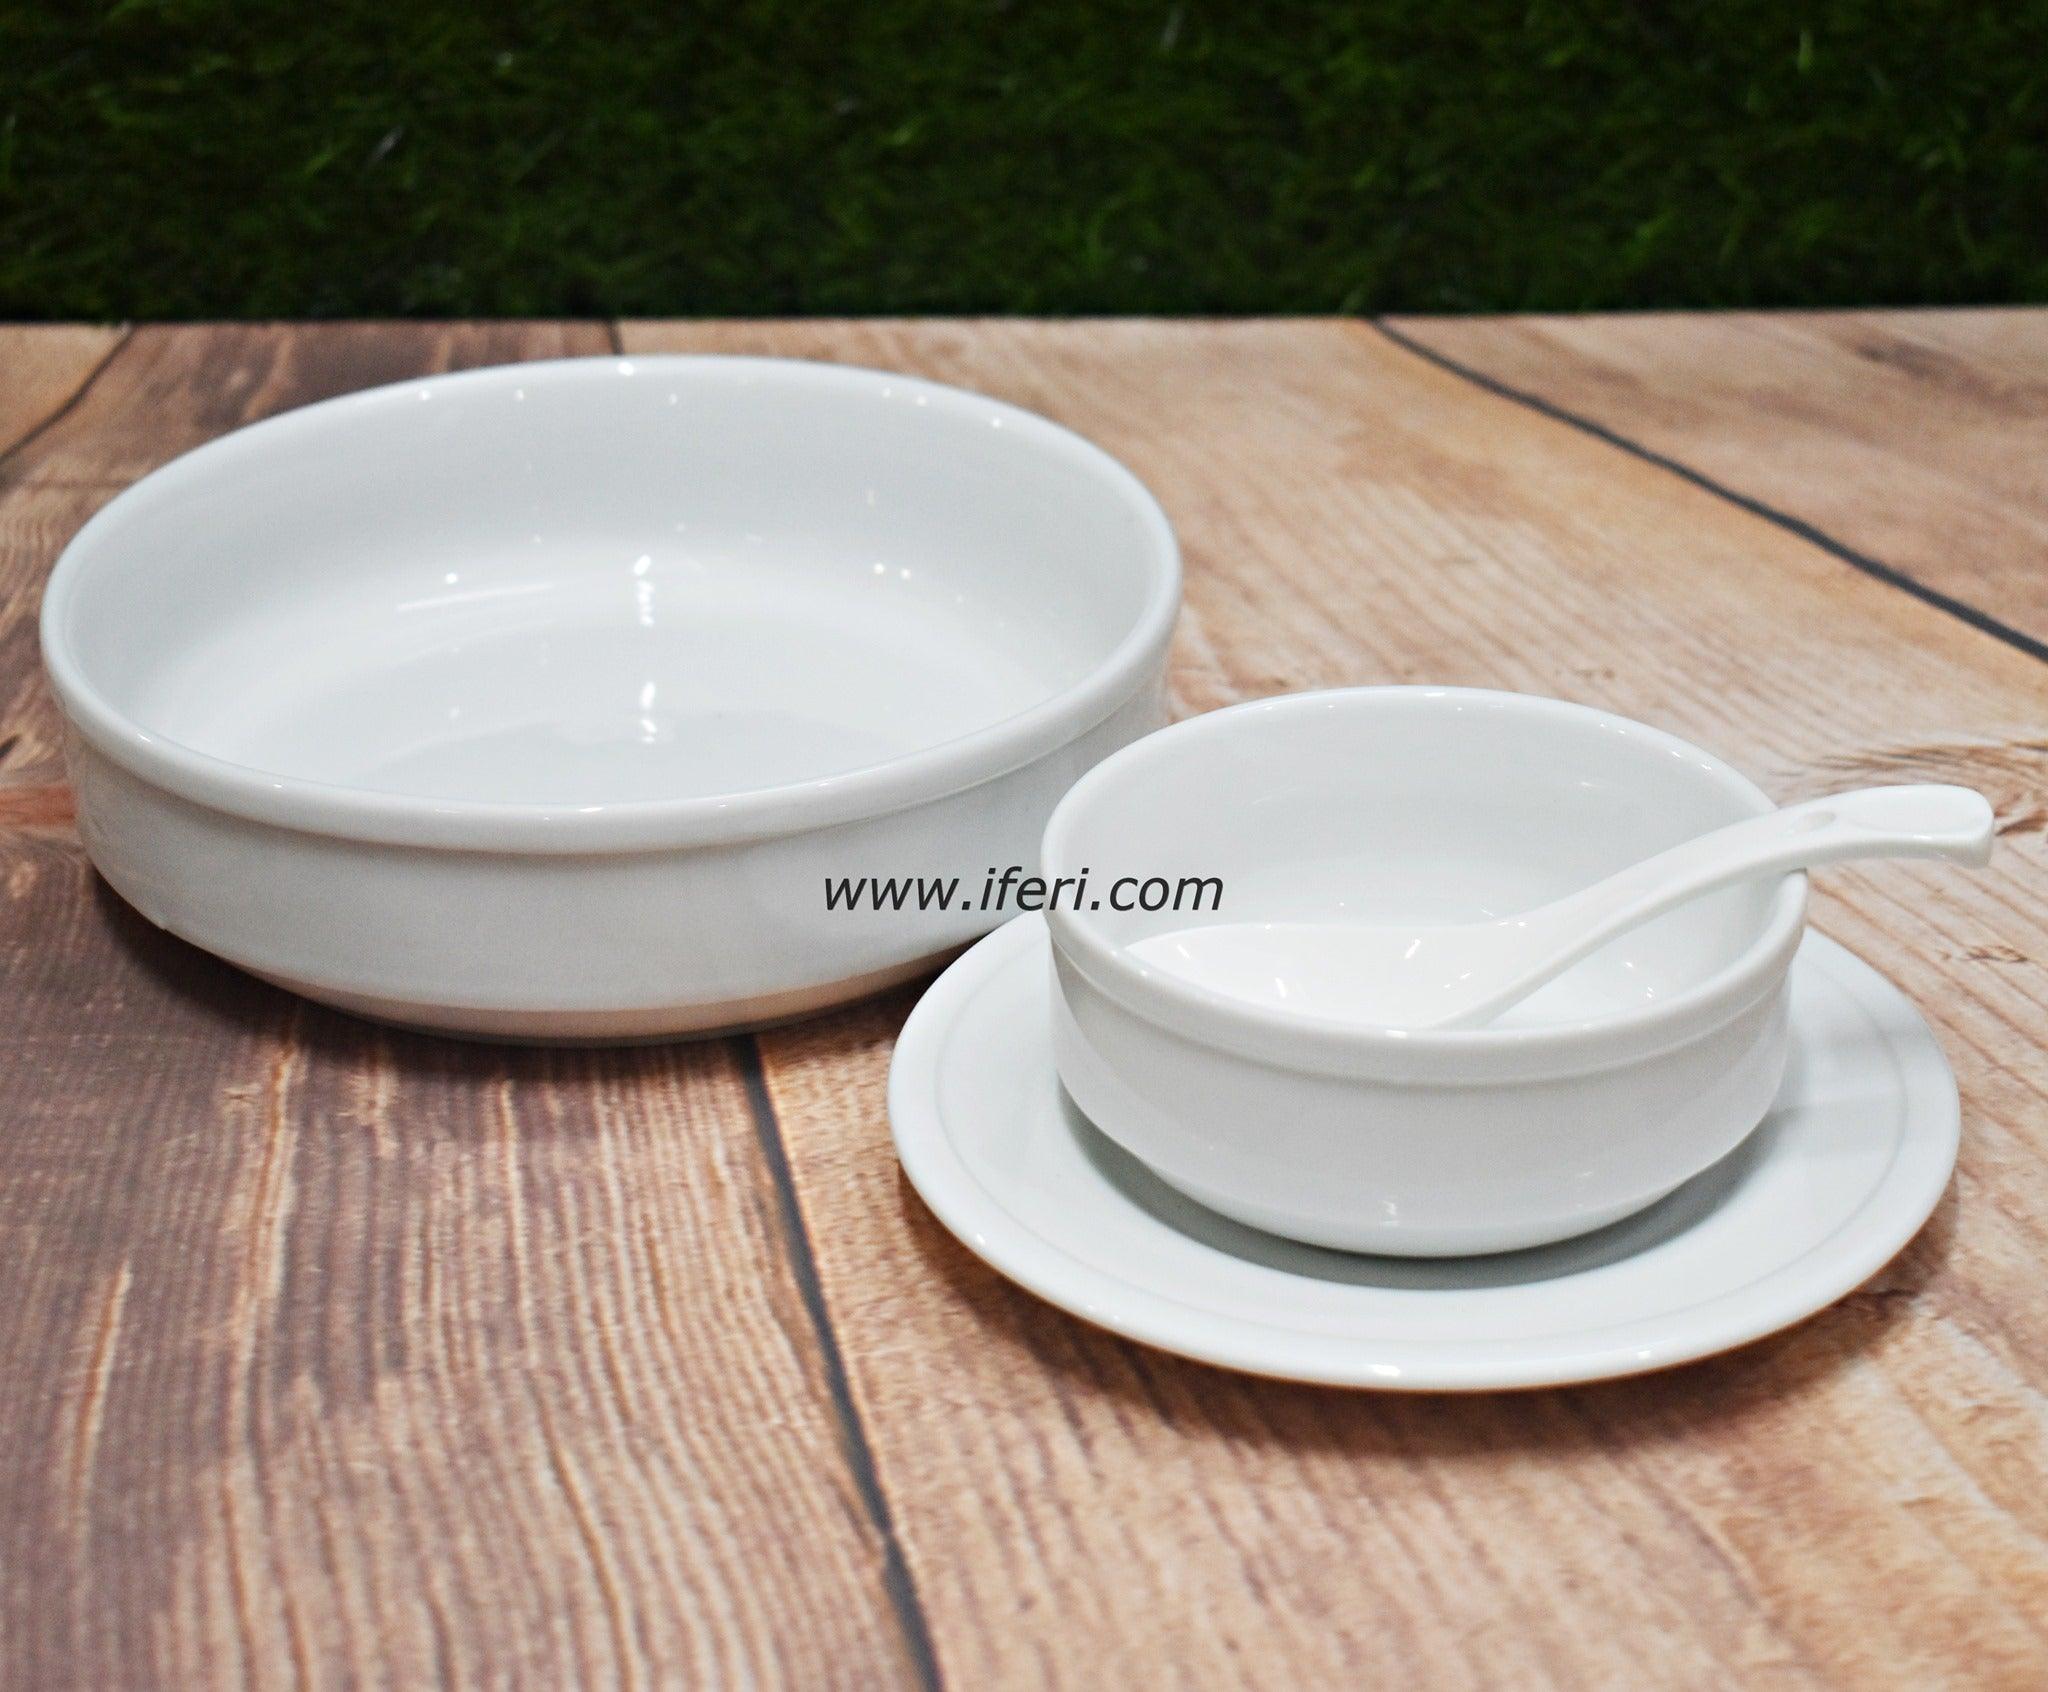 19 pcs White Ceramic Soup Set SN48574 Price in Bangladesh - iferi.com